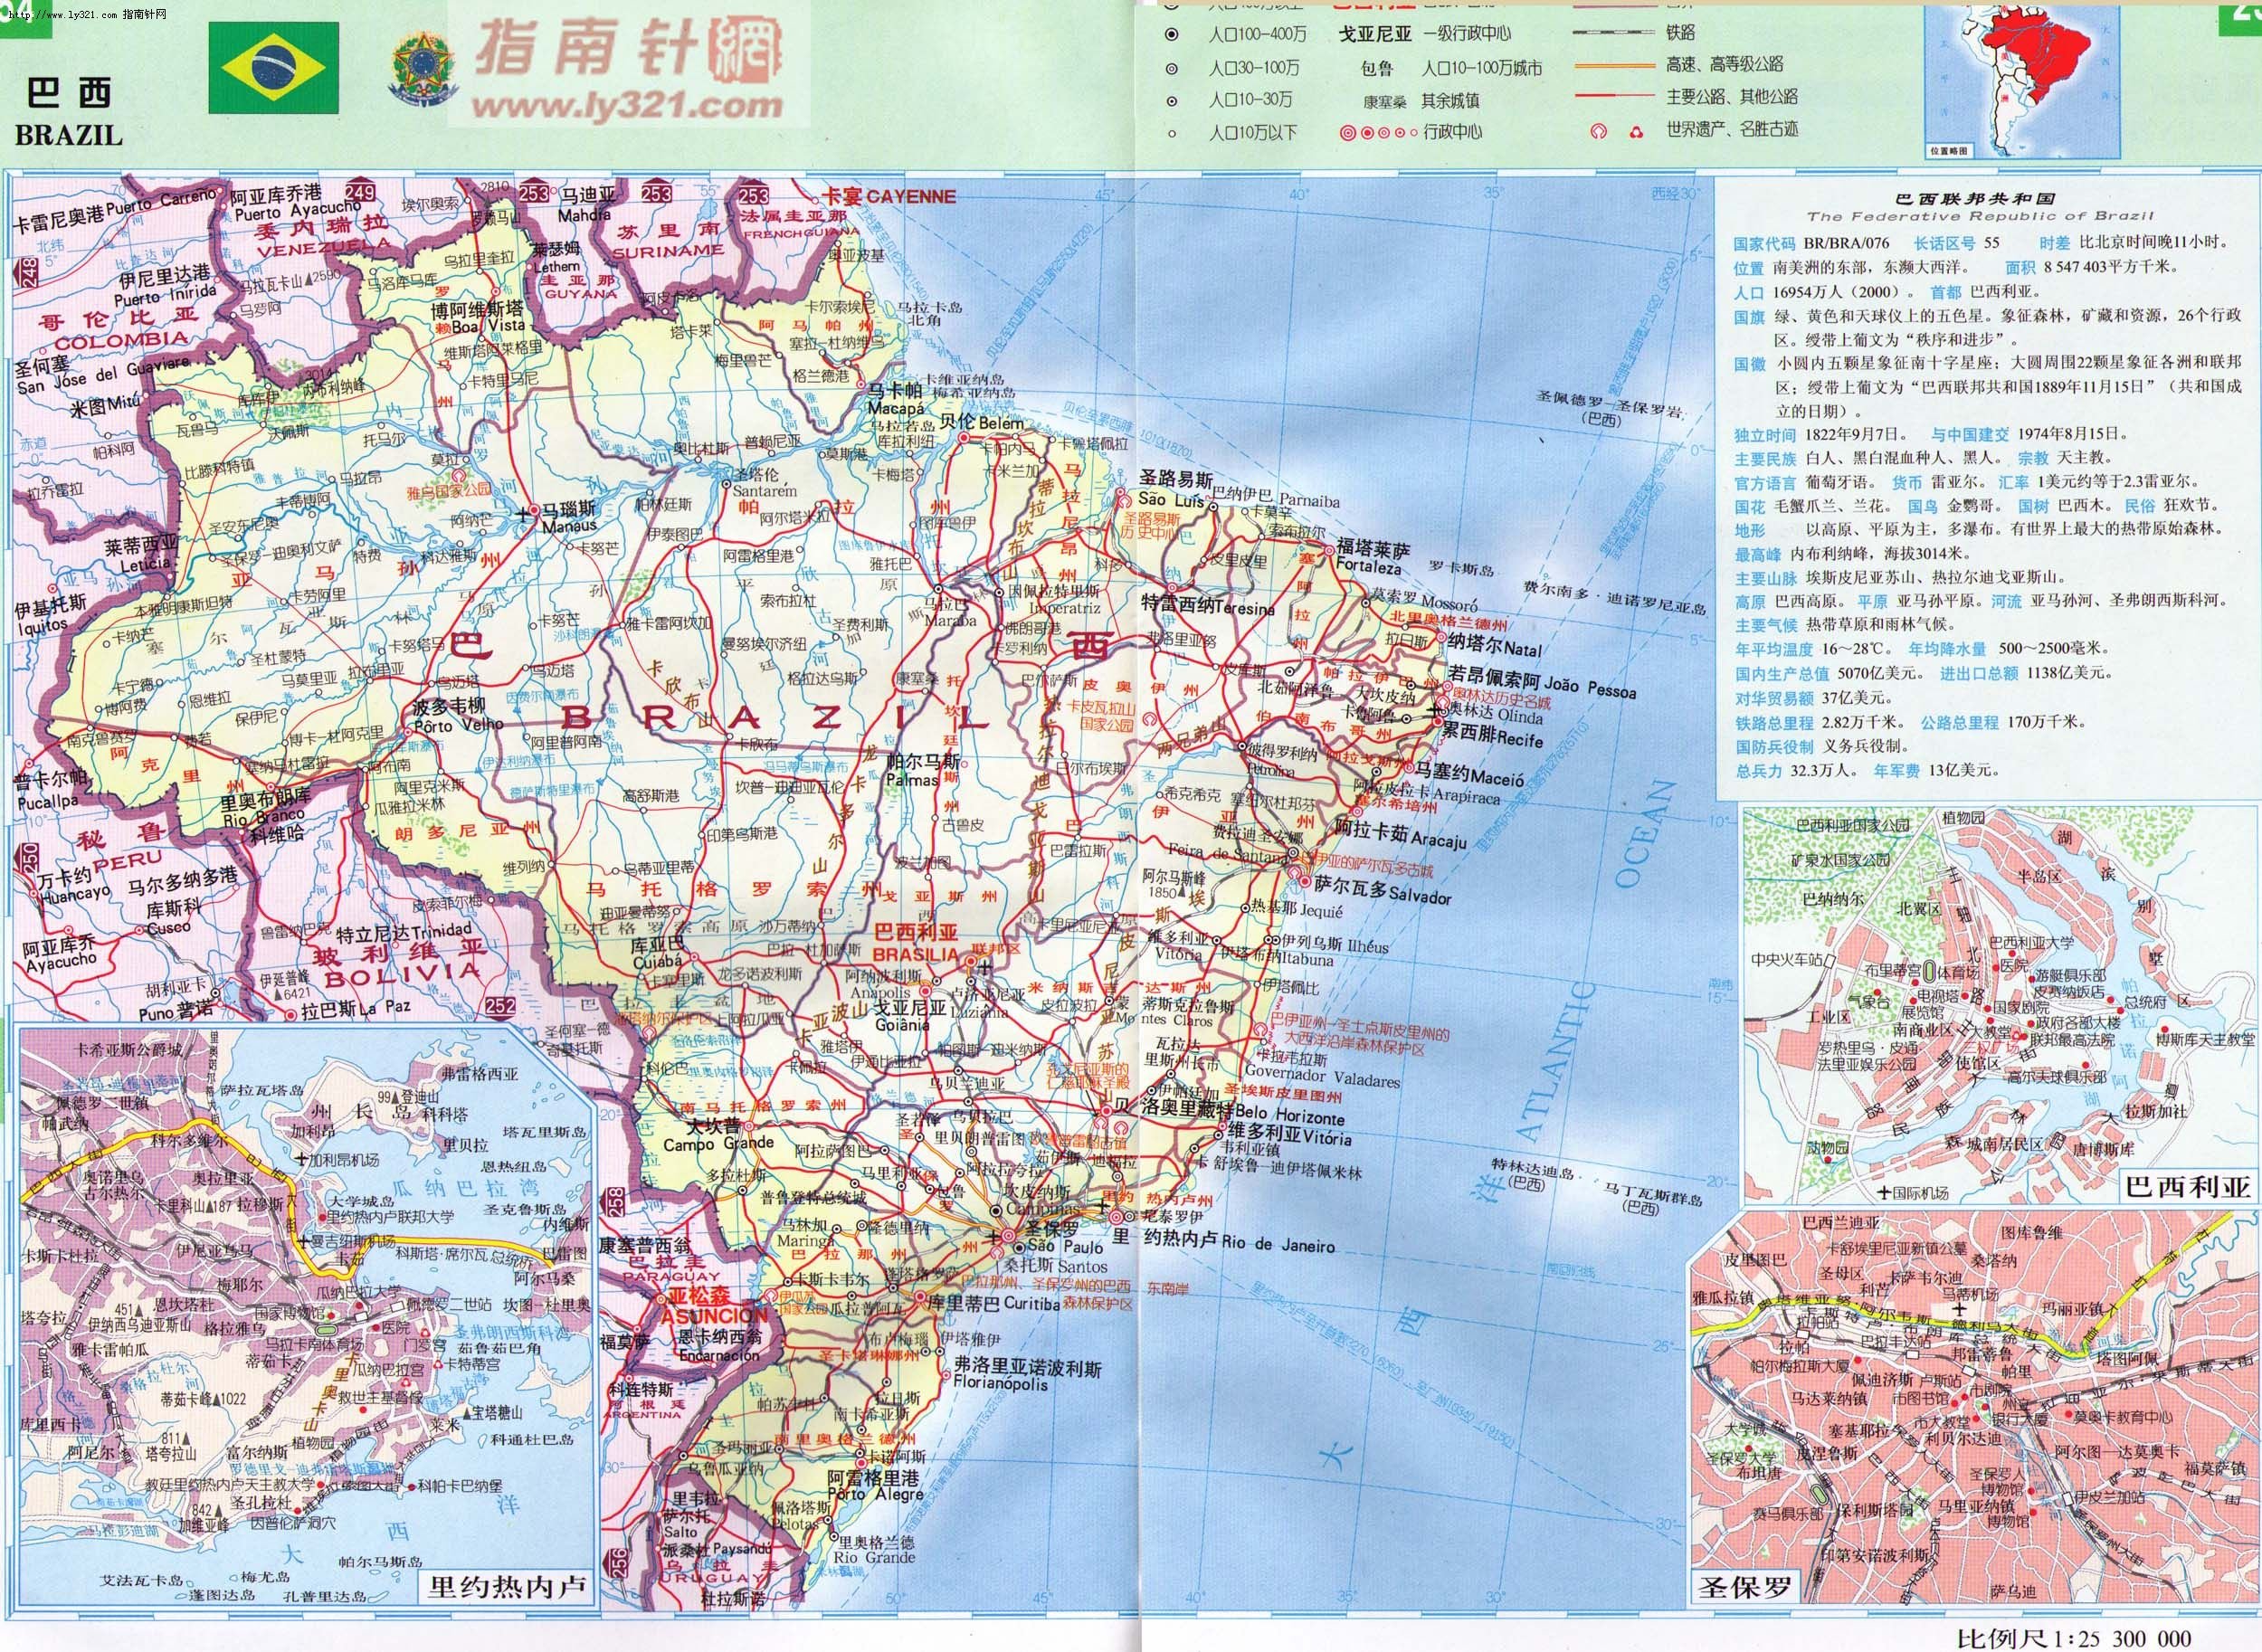 世界地圖-巴西.jpg